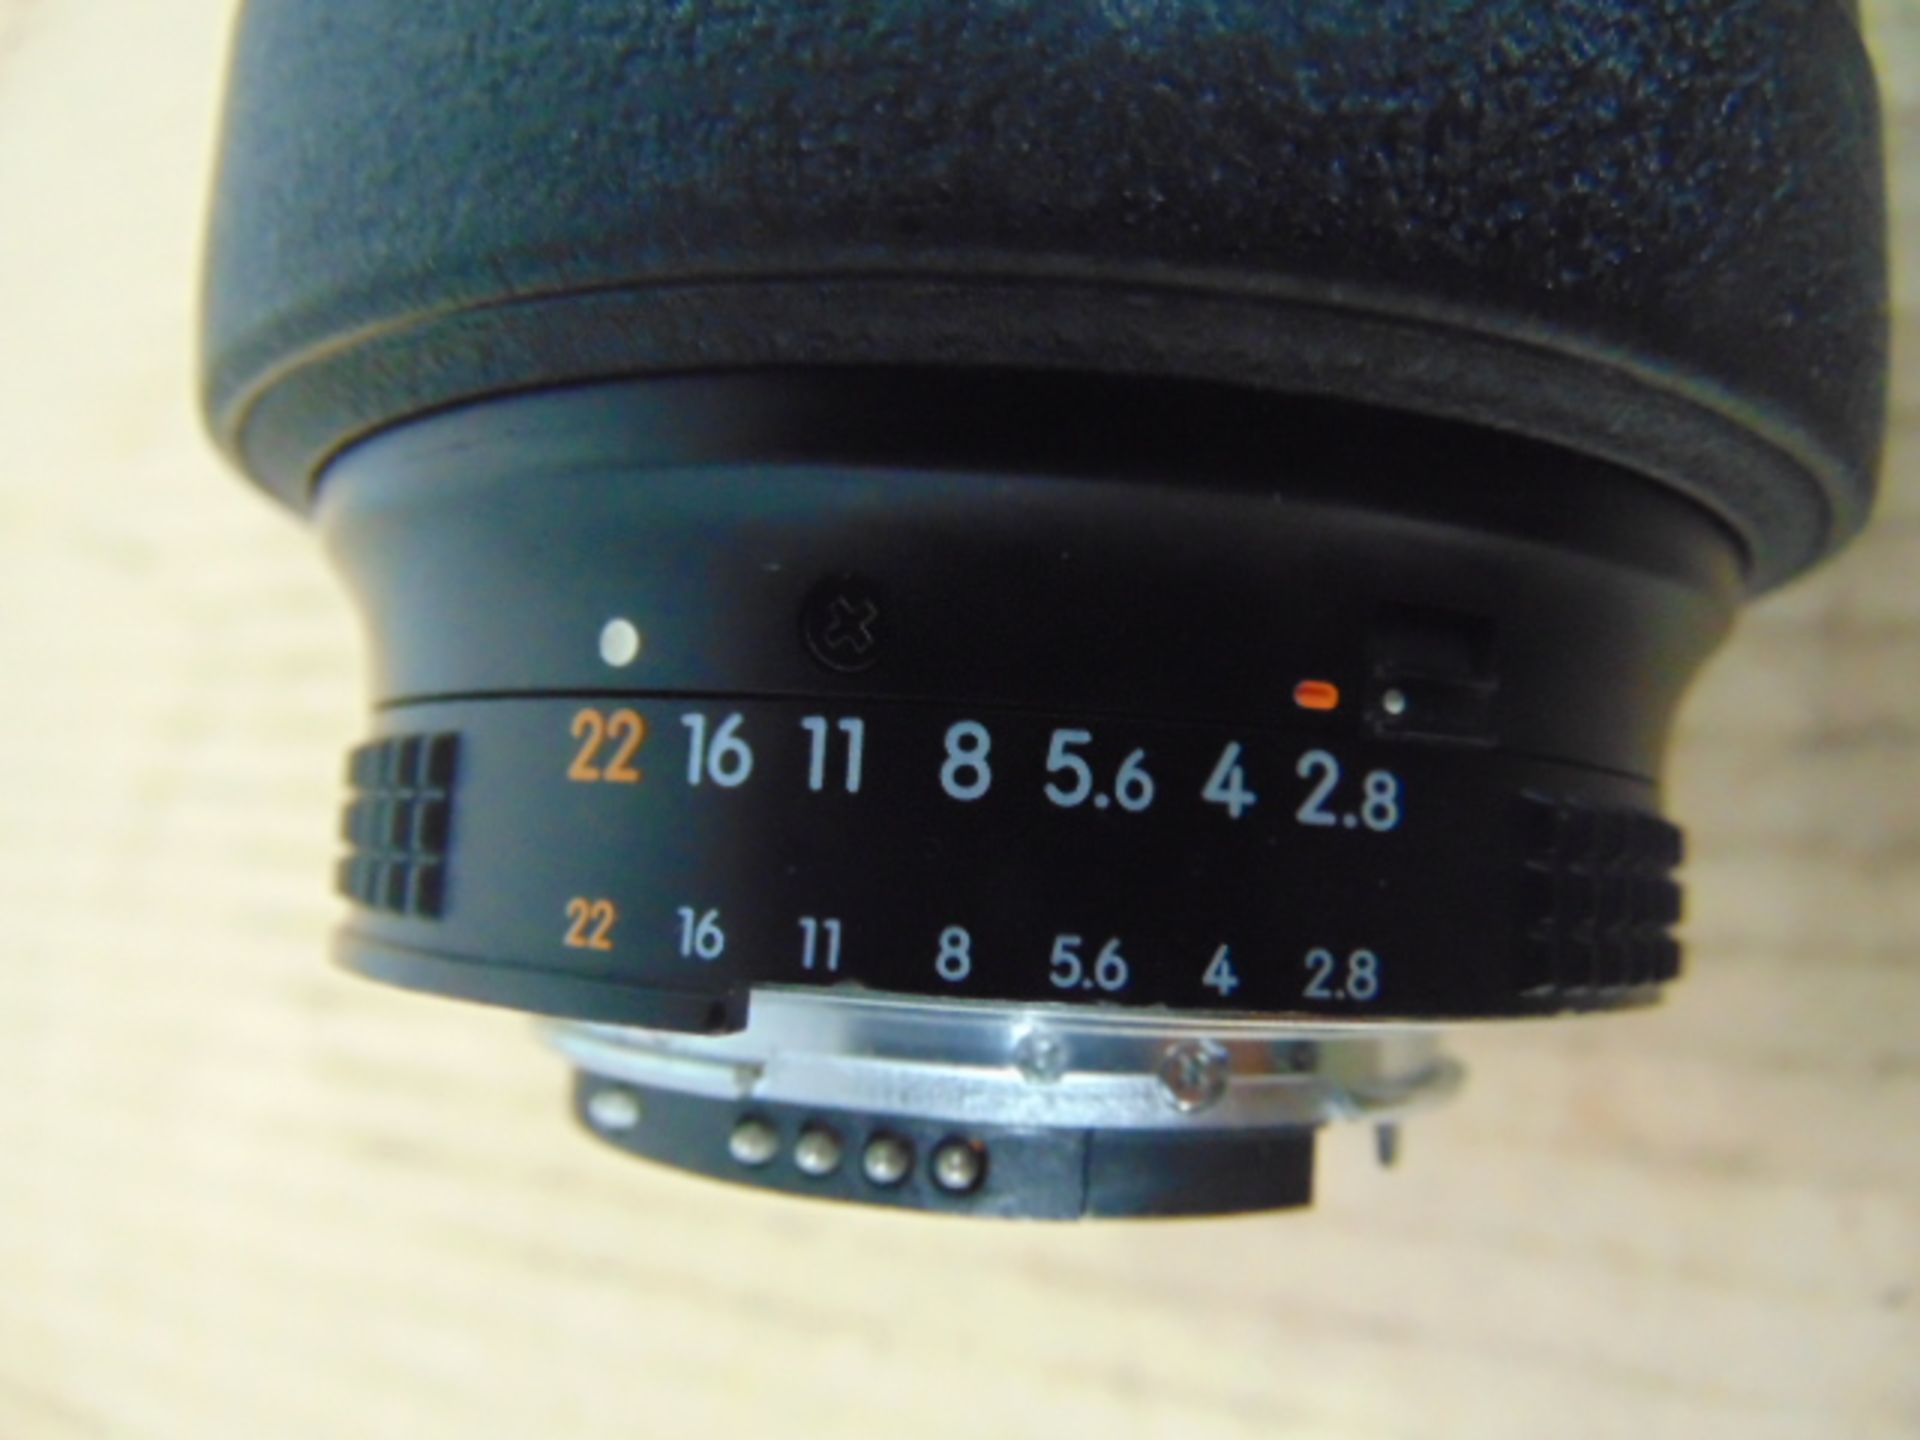 Nikon ED AF Nikkor 80-200mm 1:2.8 D Lense with Leather Carry Case - Image 4 of 11